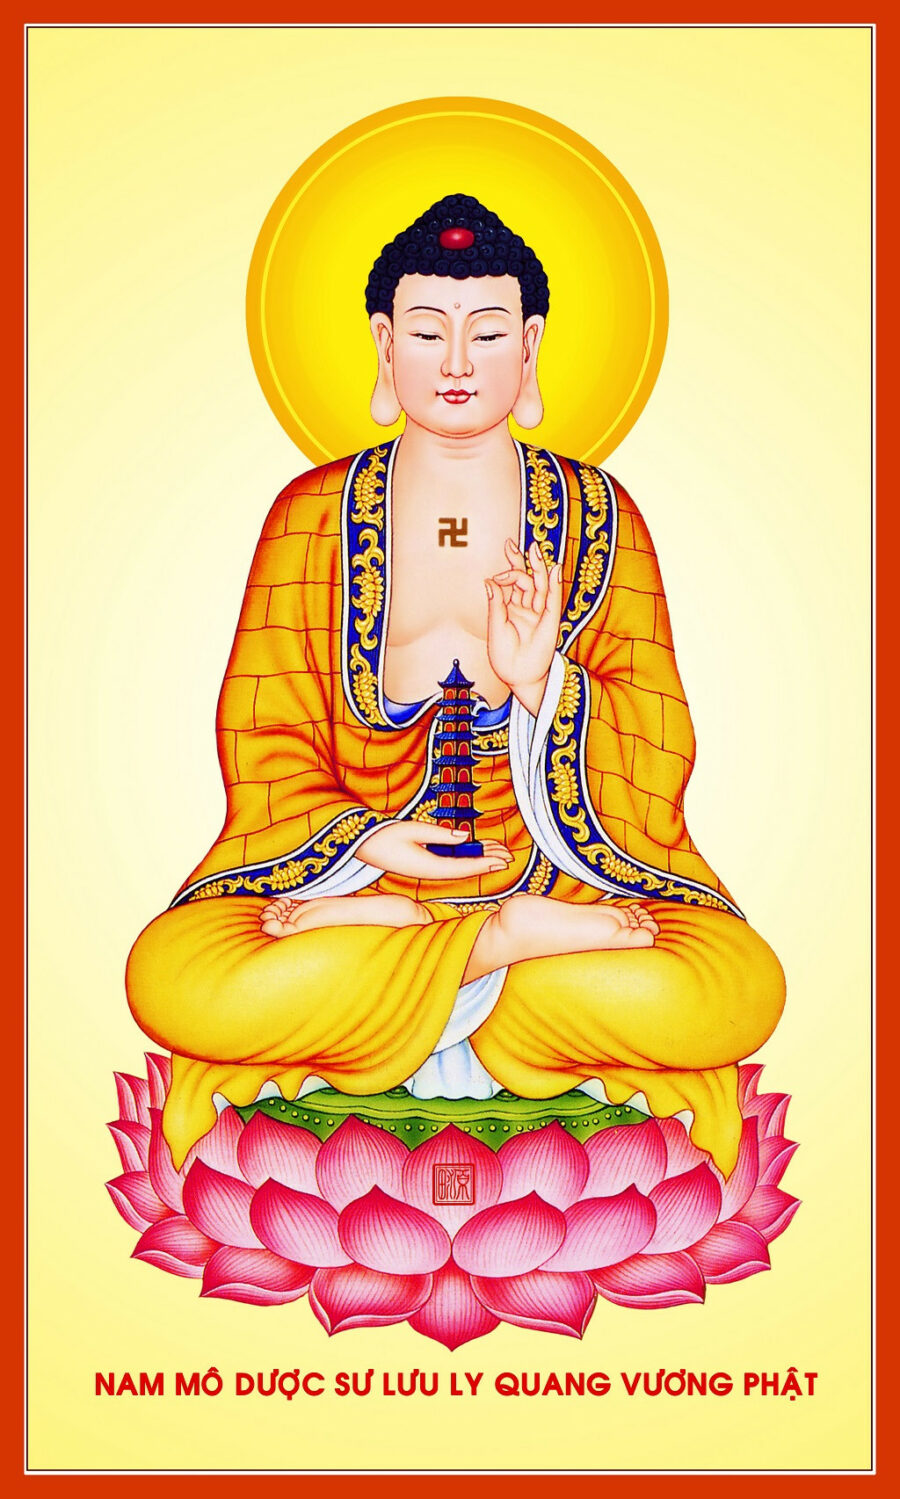 Phật Dược Sư là một vị thánh cao cả, đã giúp đỡ đời người trong việc chữa bệnh và giảm đau. Hãy ngắm nhìn những tác phẩm nghệ thuật mang hình ảnh Phật Dược Sư khổ lớn trên trang web của chúng tôi và cảm nhận tình yêu vô hạn của Ngài đối với con người.